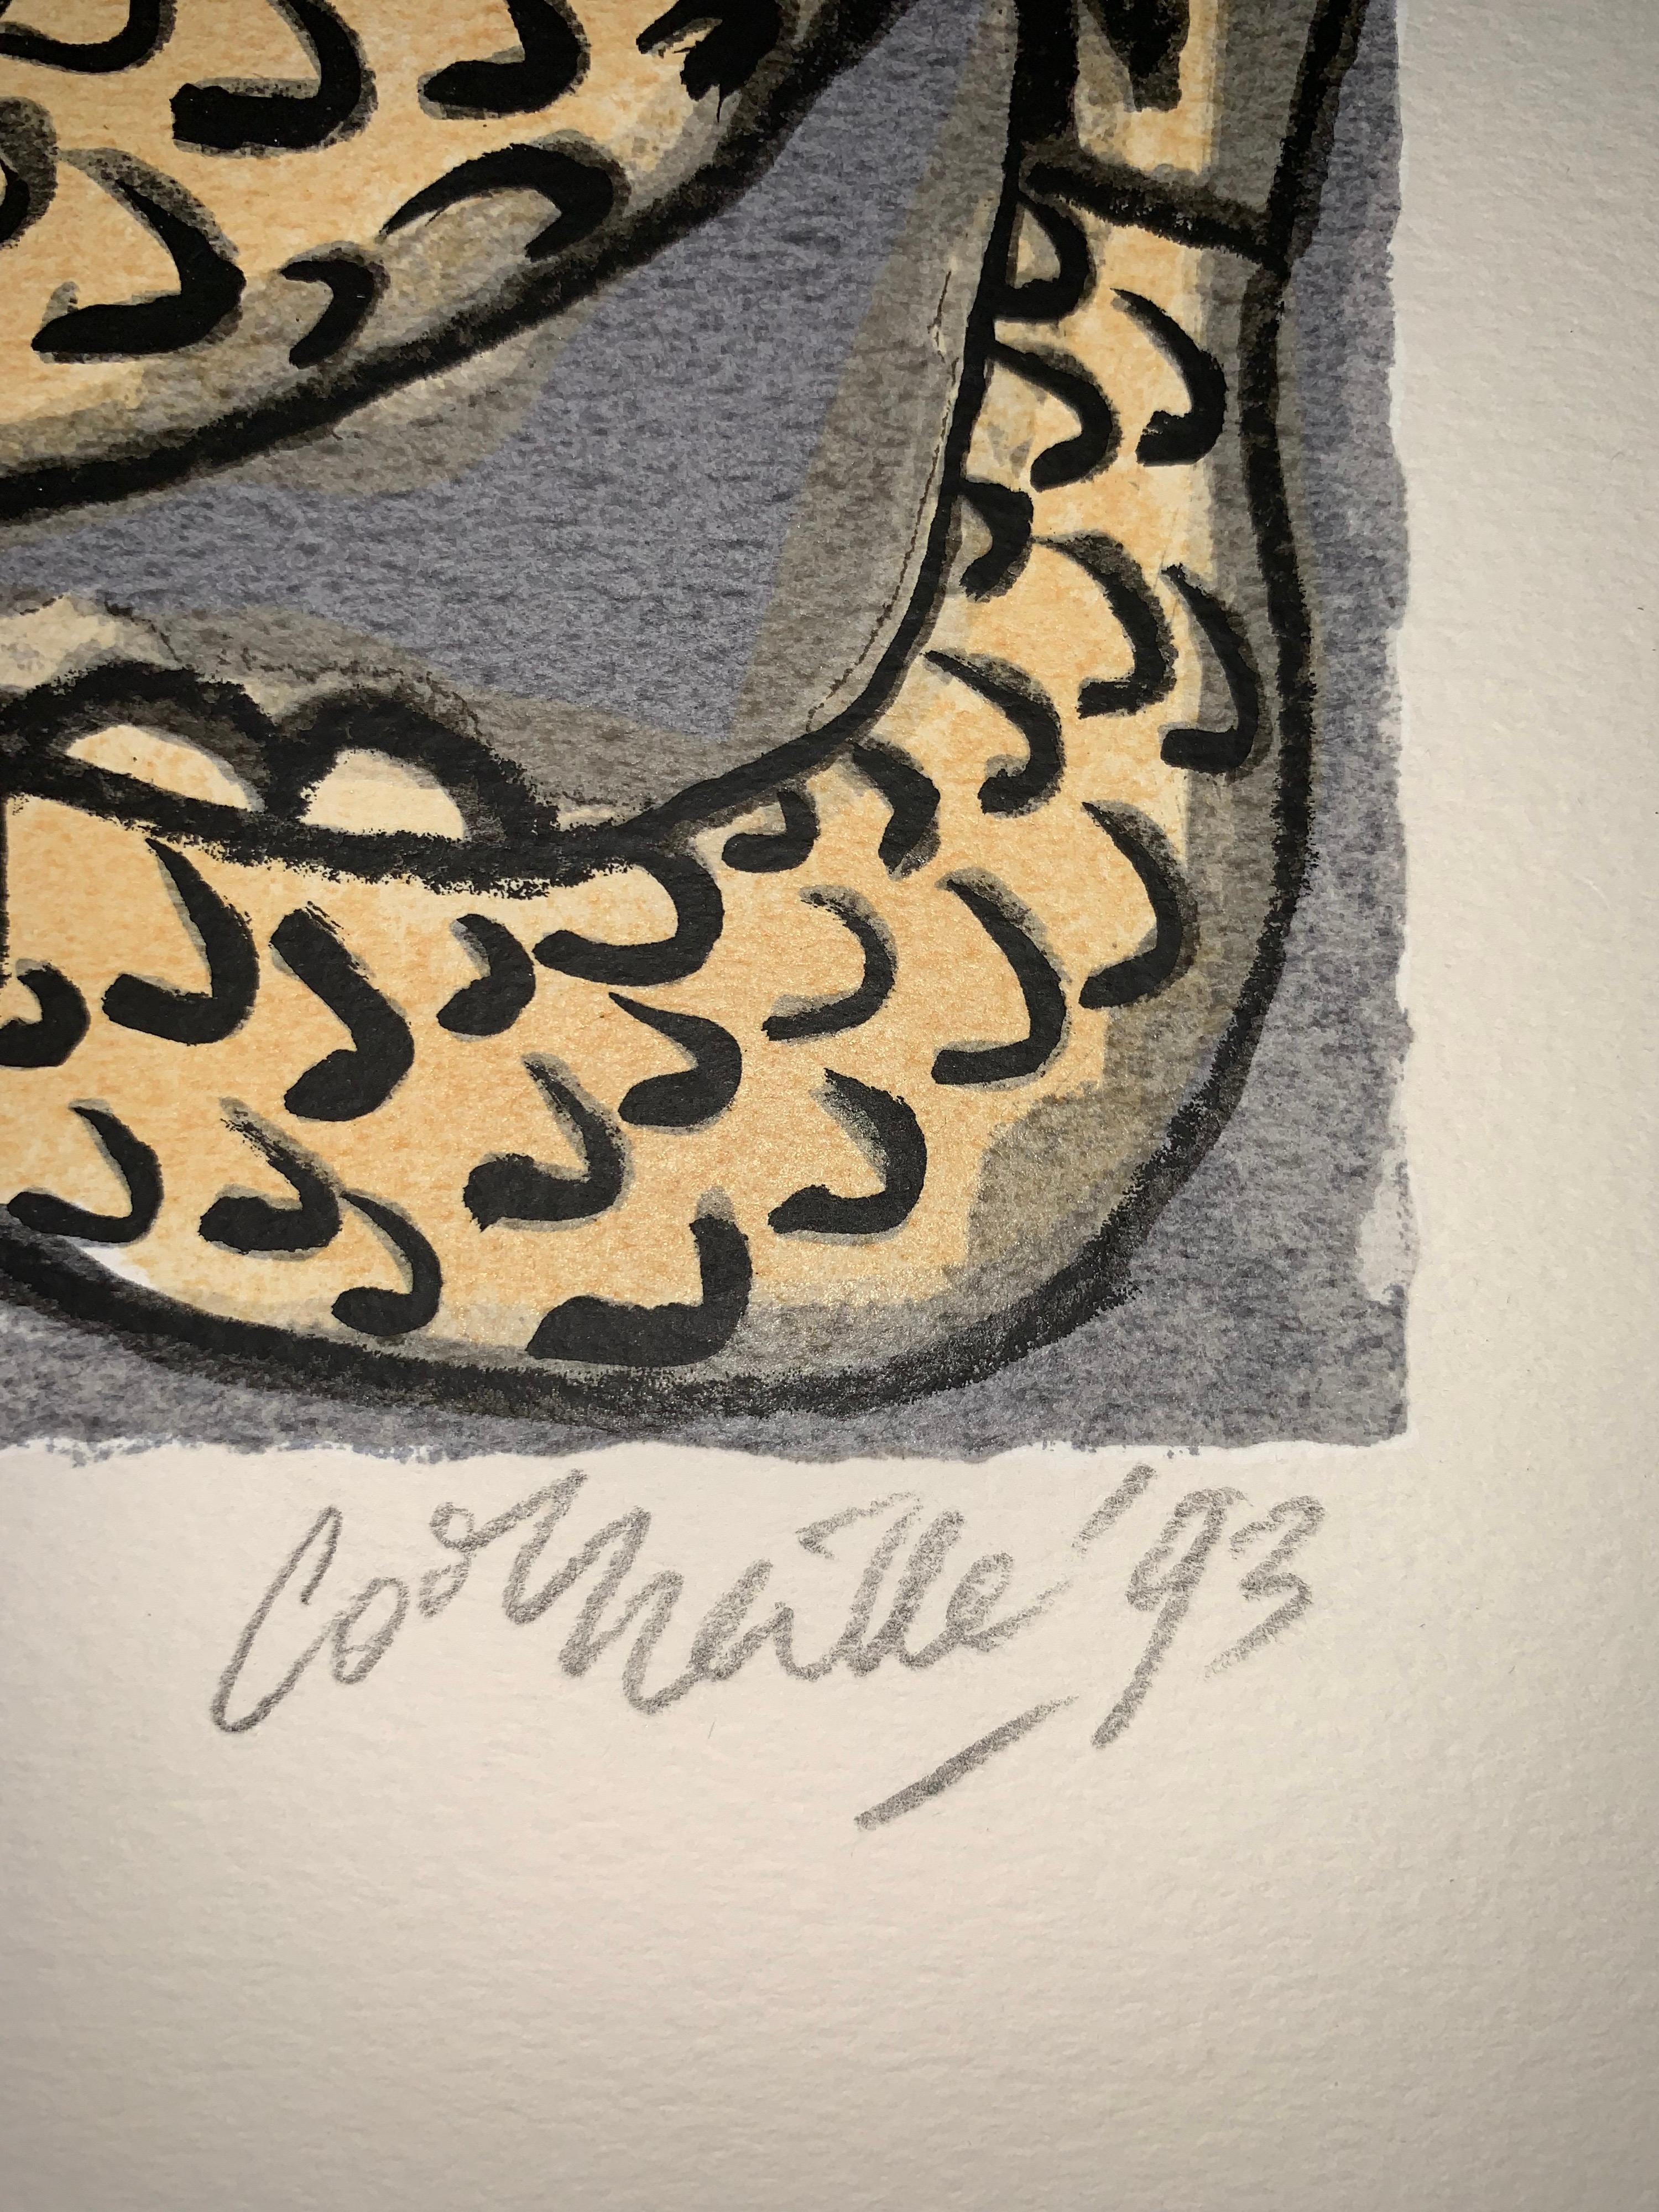 Les Mémoires de Bali II - Cobra, 20e siècle, 31/200, sérigraphie Portfolio 3 - Gris Figurative Print par Guillaume Cornelis van Beverloo (Corneille)